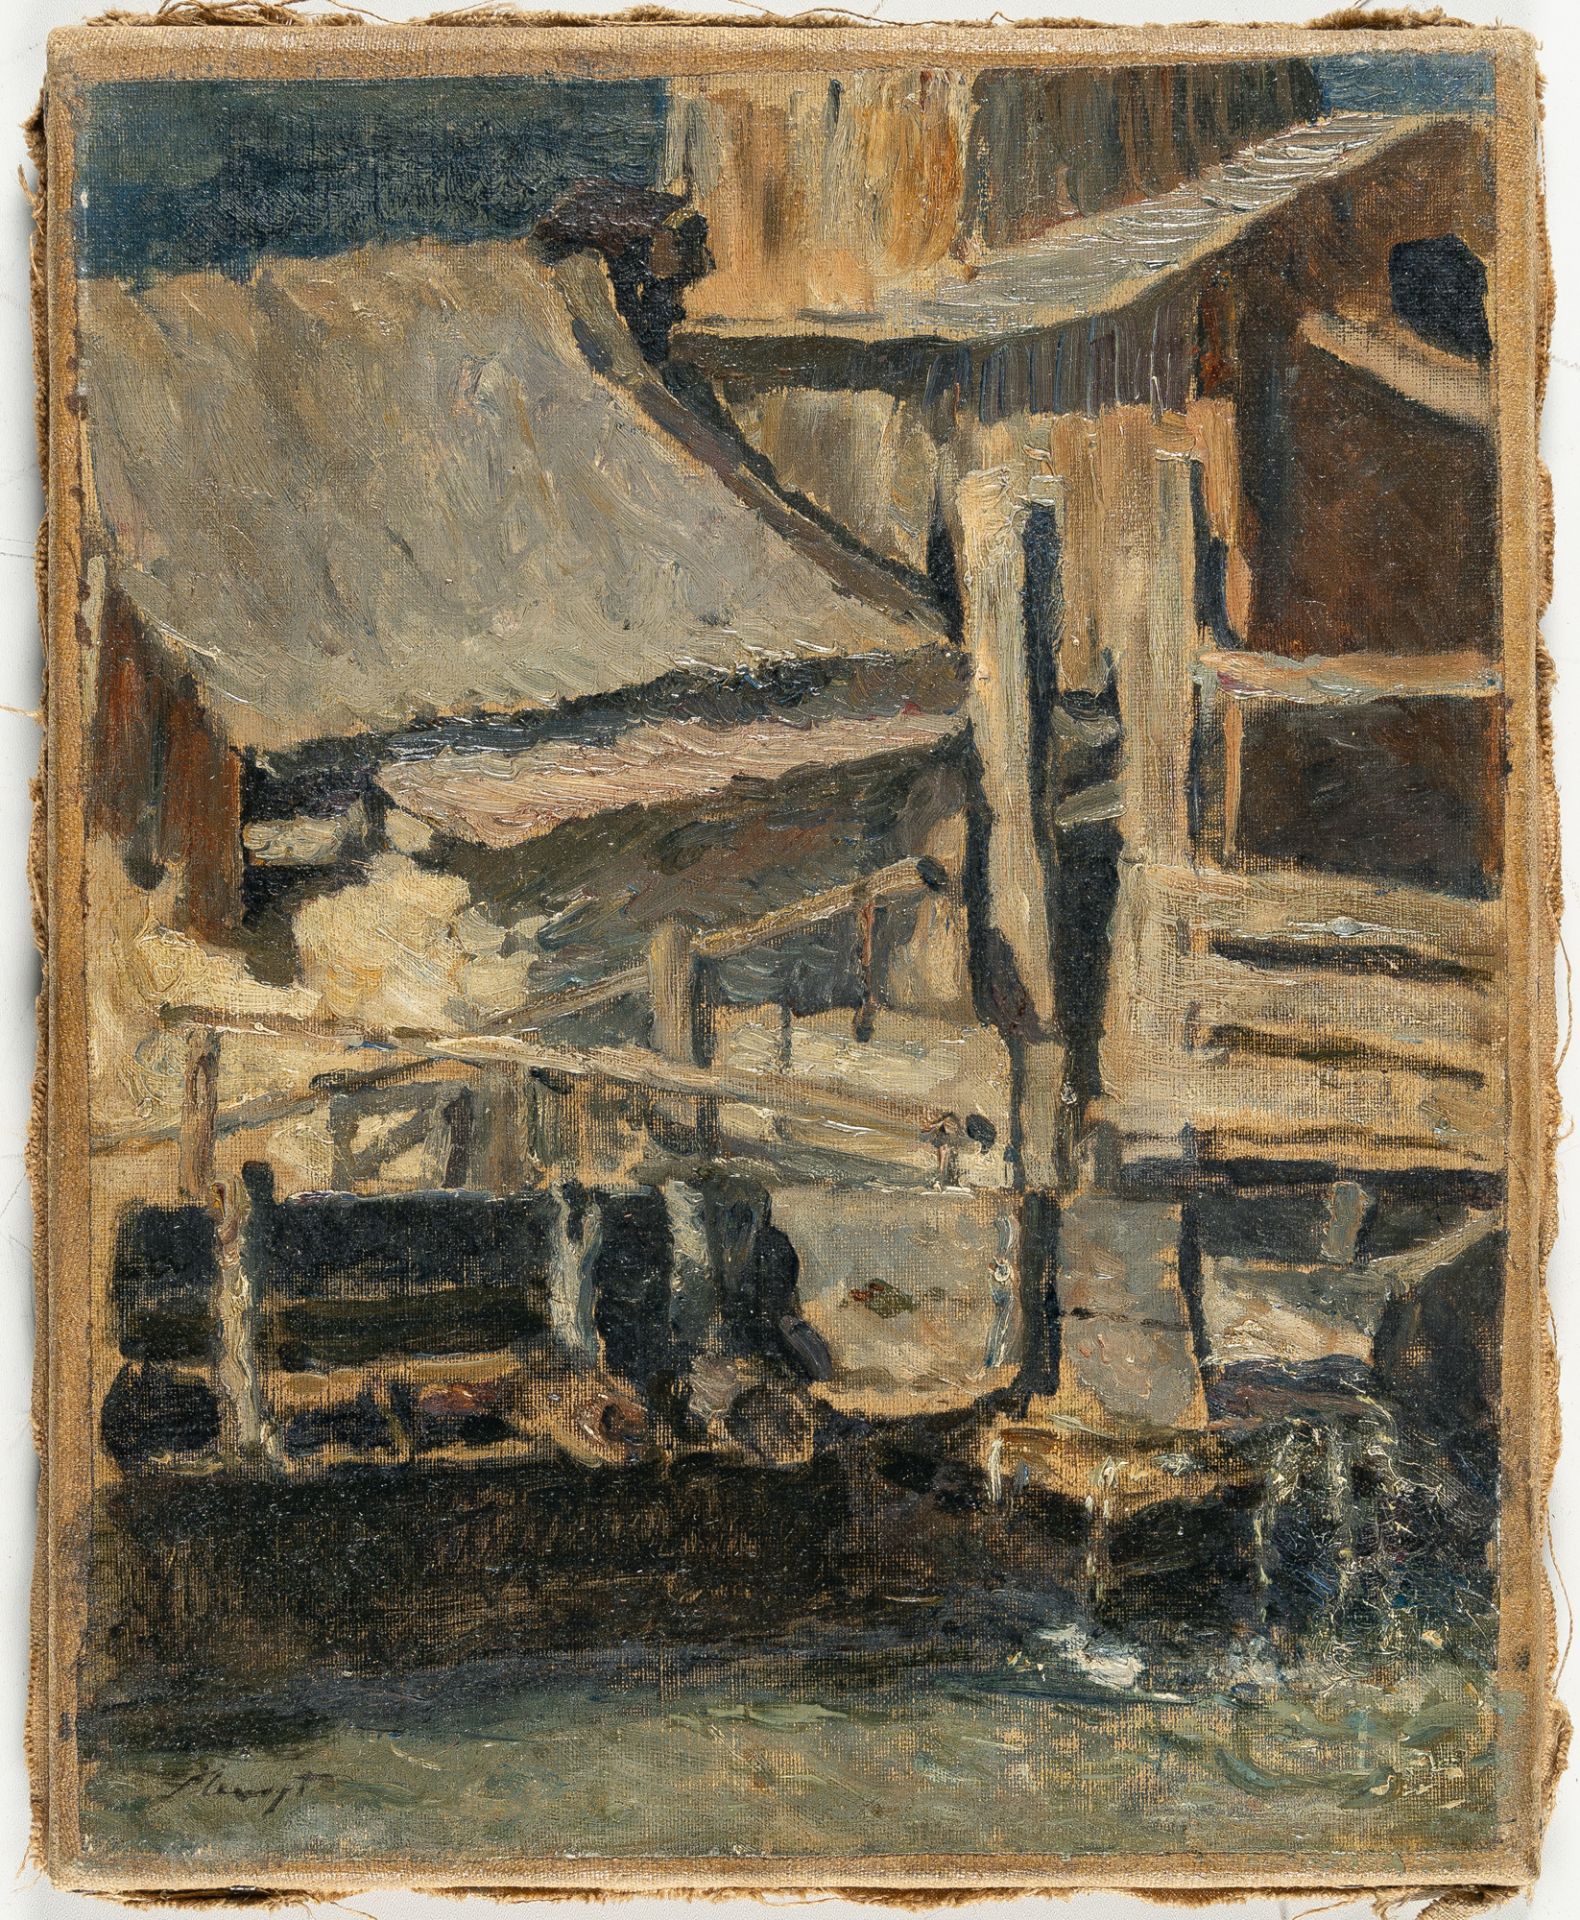 Max Slevogt (1868 Landshut - Neukastel/Pfalz 1932) – Alte Mühle (Old mill) - Bild 2 aus 3